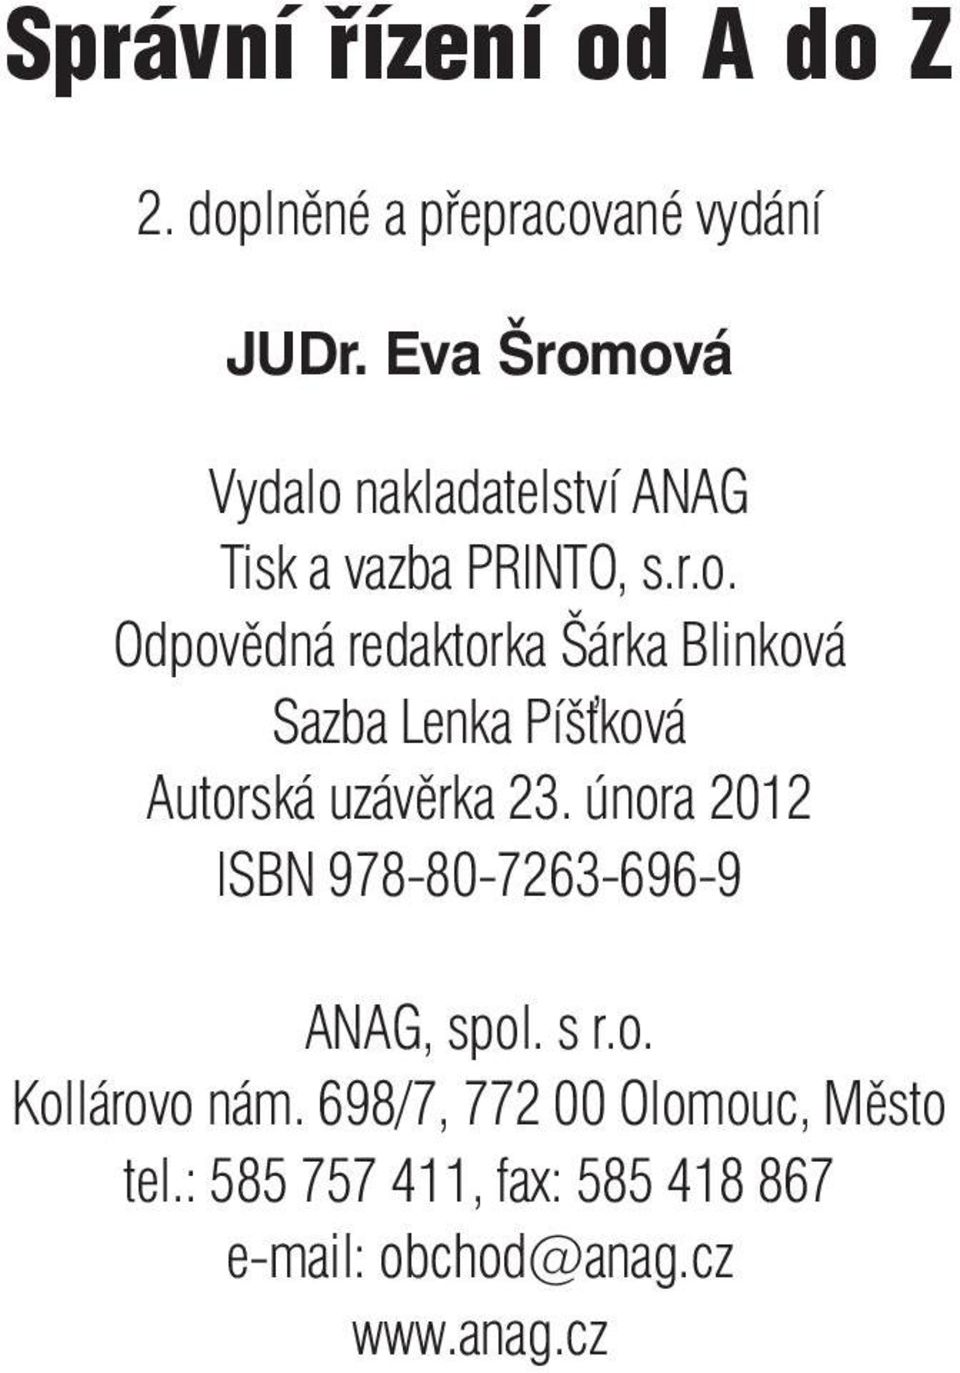 února 2012 ISBN 978-80-7263-696-9 ANAG, spol. s r.o. Kollárovo nám.